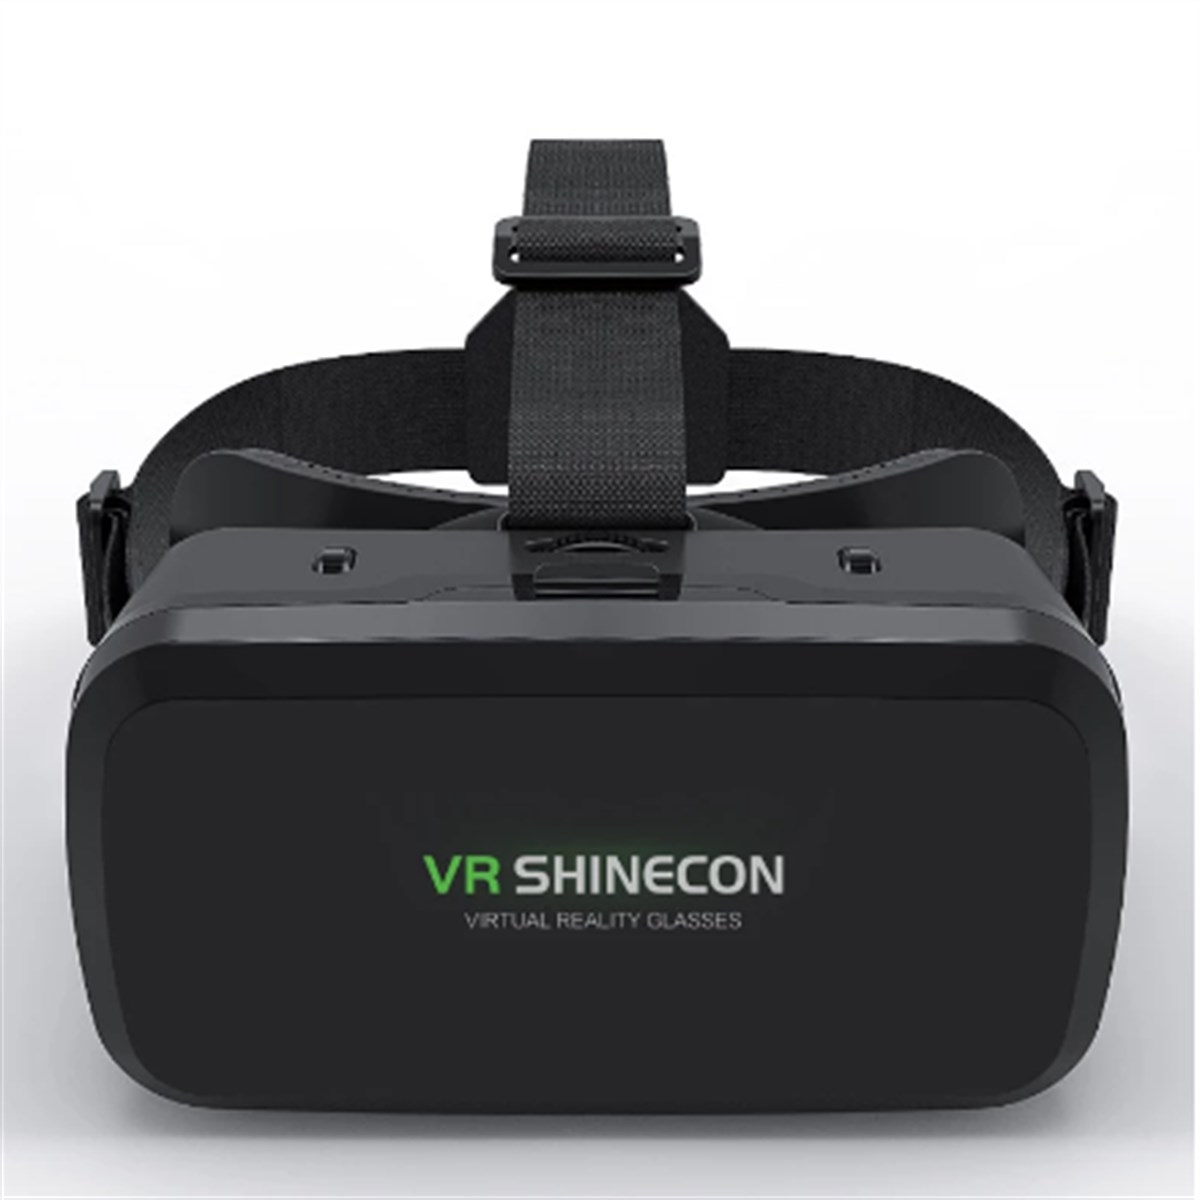 Sanal Gerçeklik Gözlüğü Vr Shinecon 3D 720° Panoromik Gözlük